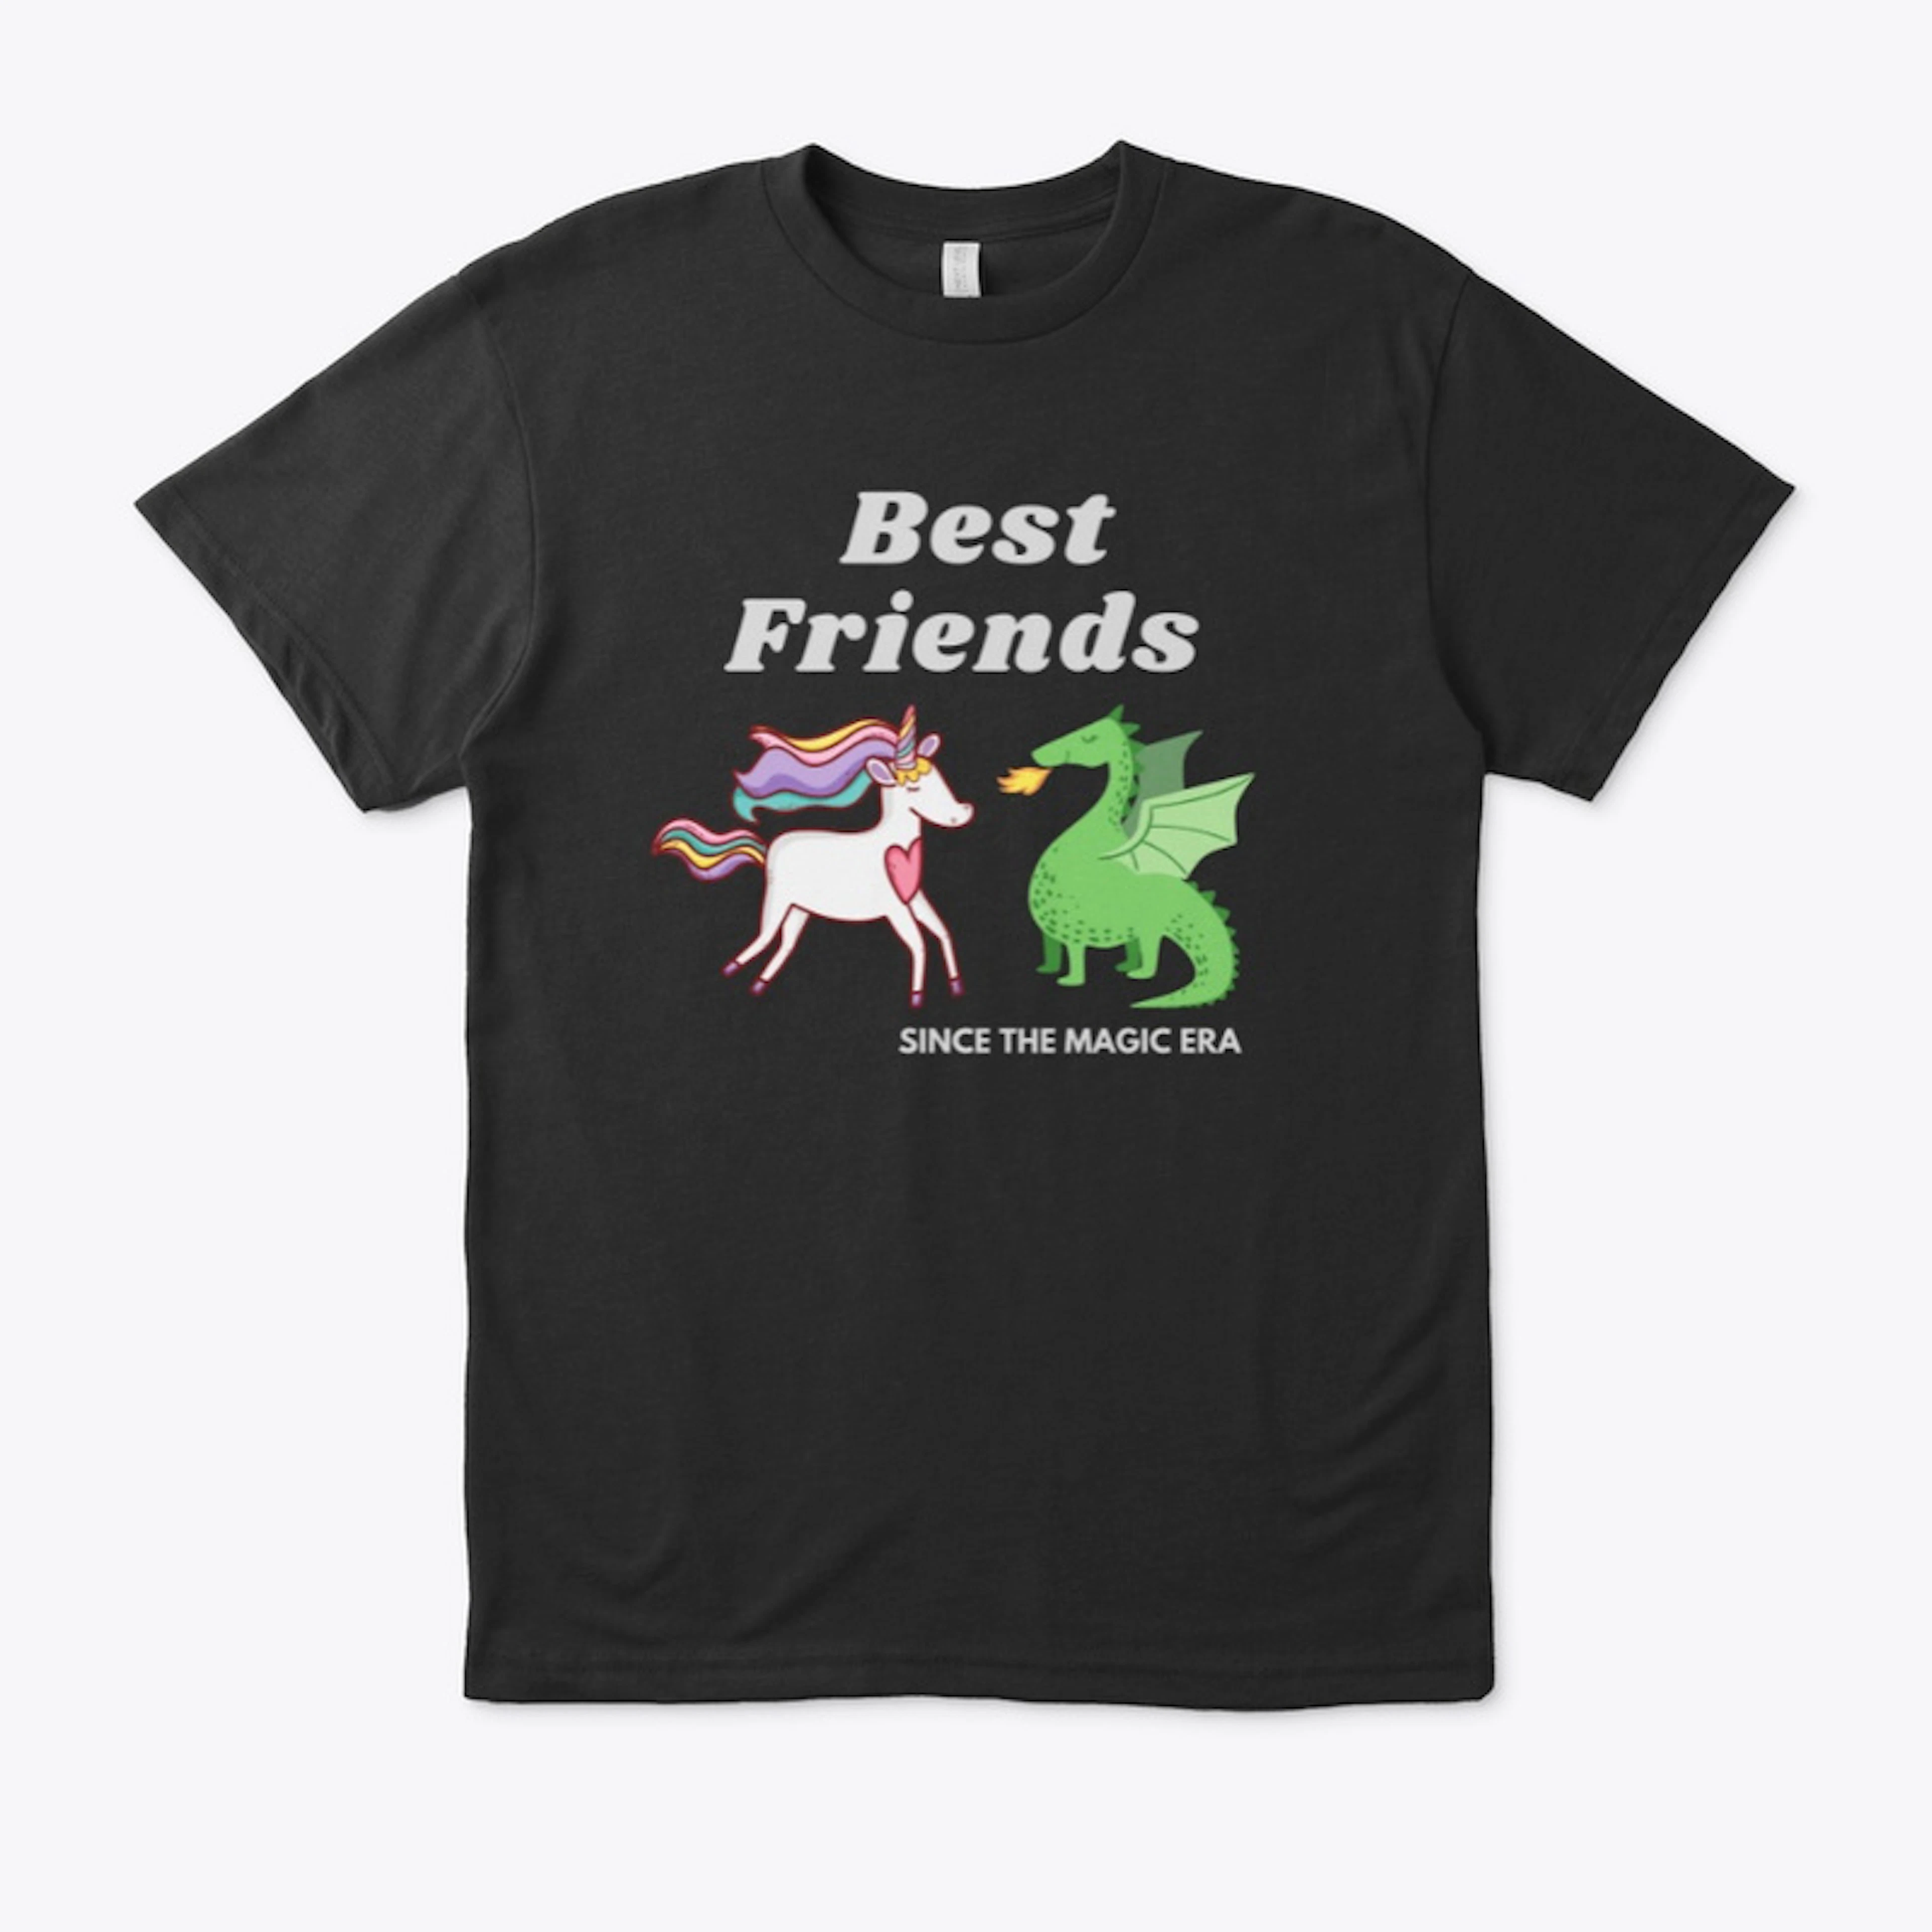 Best Friends Since the Magic era